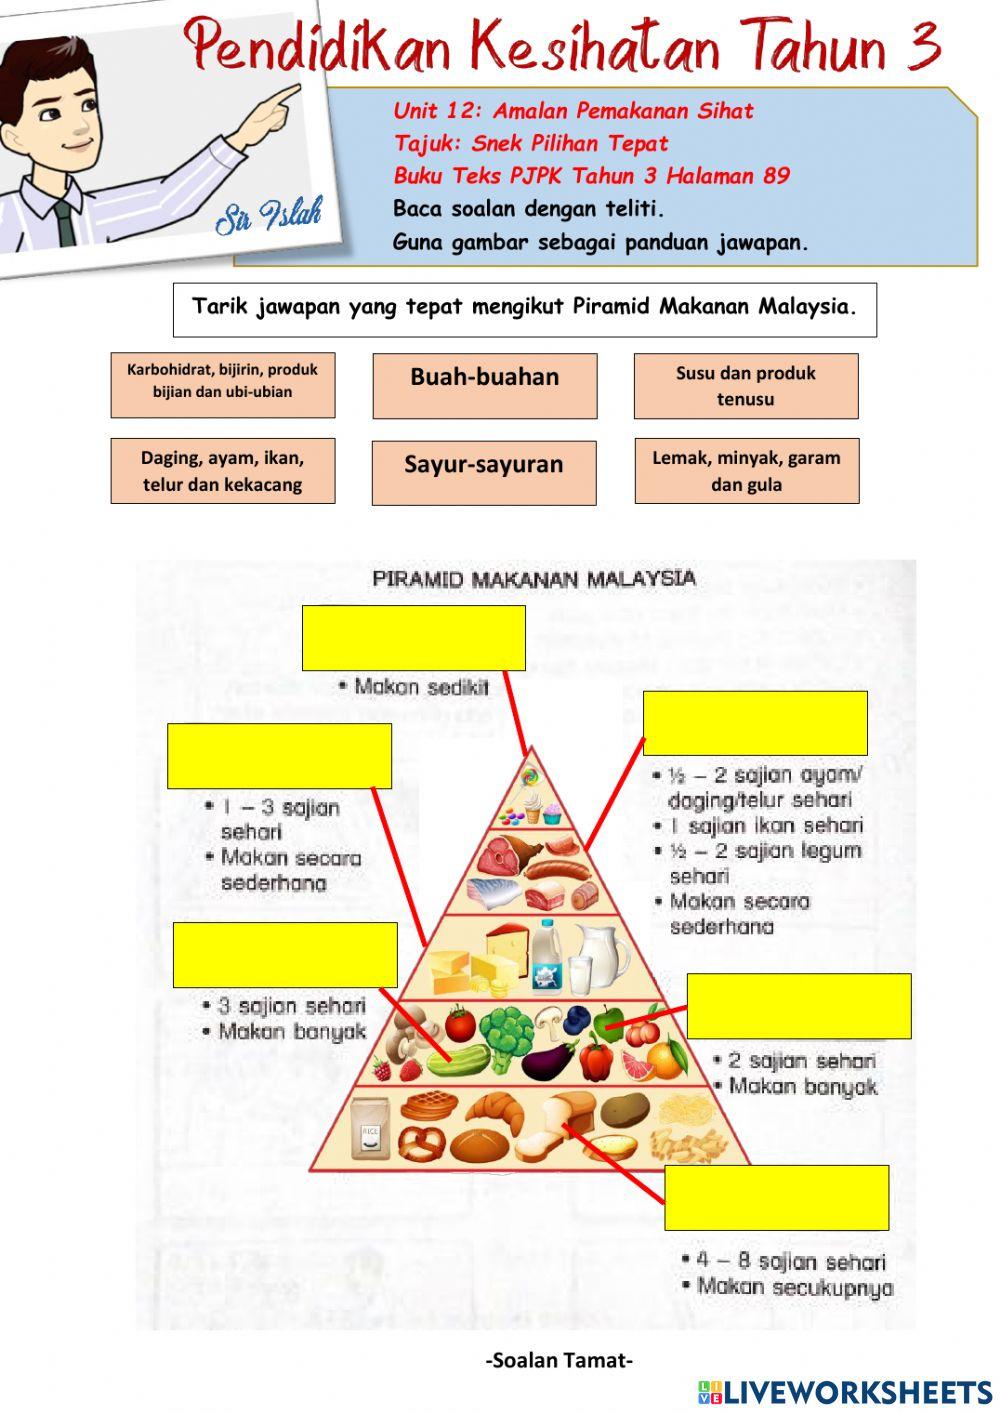 Pendidikan Kesihatan Tahun 3:Piramid Makanan Malaysia